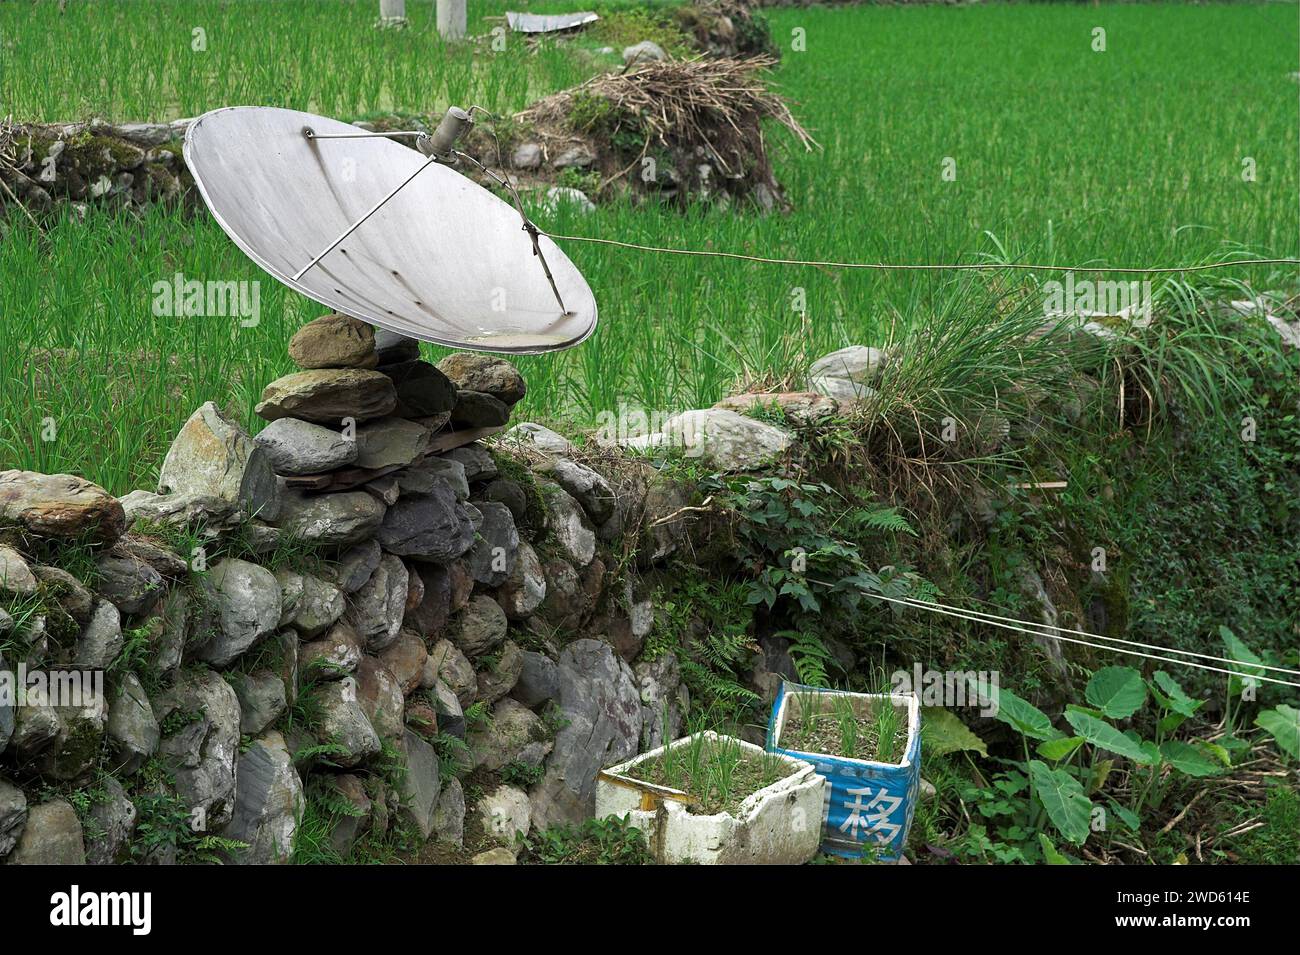 龙胜镇 (龙胜县) 中國 Longsheng, Dazhai Longji Ping'an Zhuang, China; Eine vorübergehend installierte Satellitenschüssel; Parabolantenne vorübergehend installiert Stockfoto